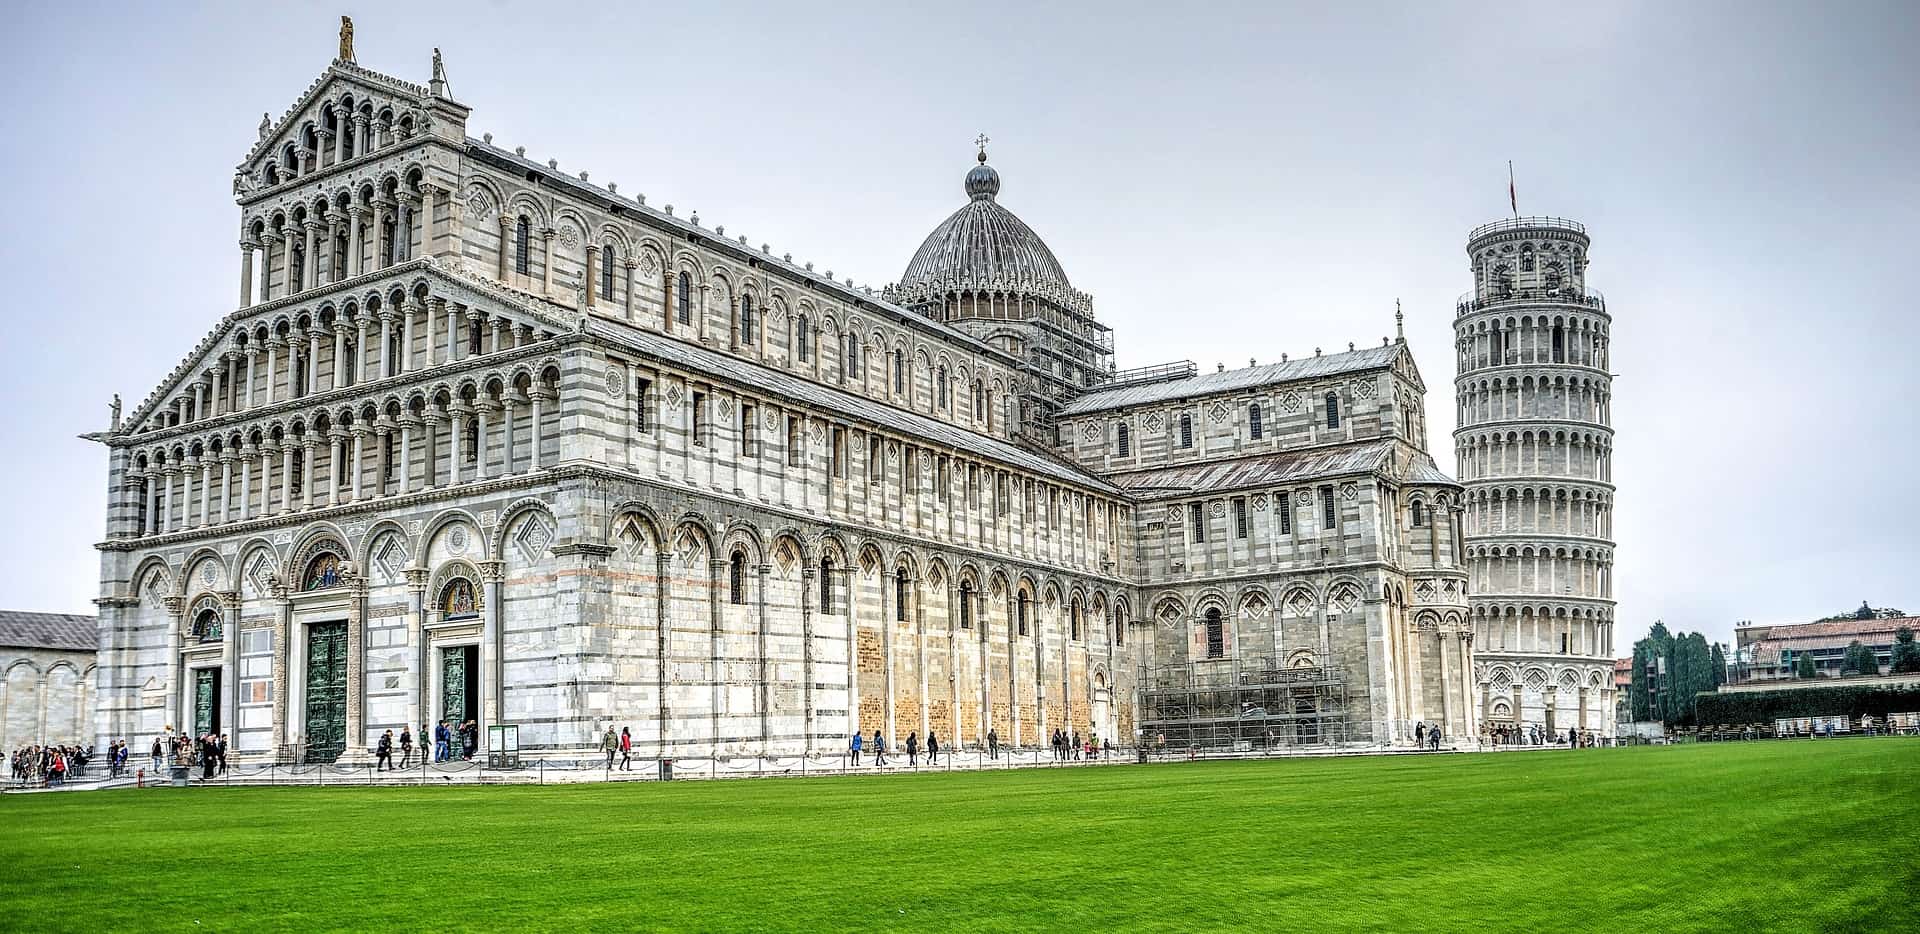 Universita degli studi di Pisa